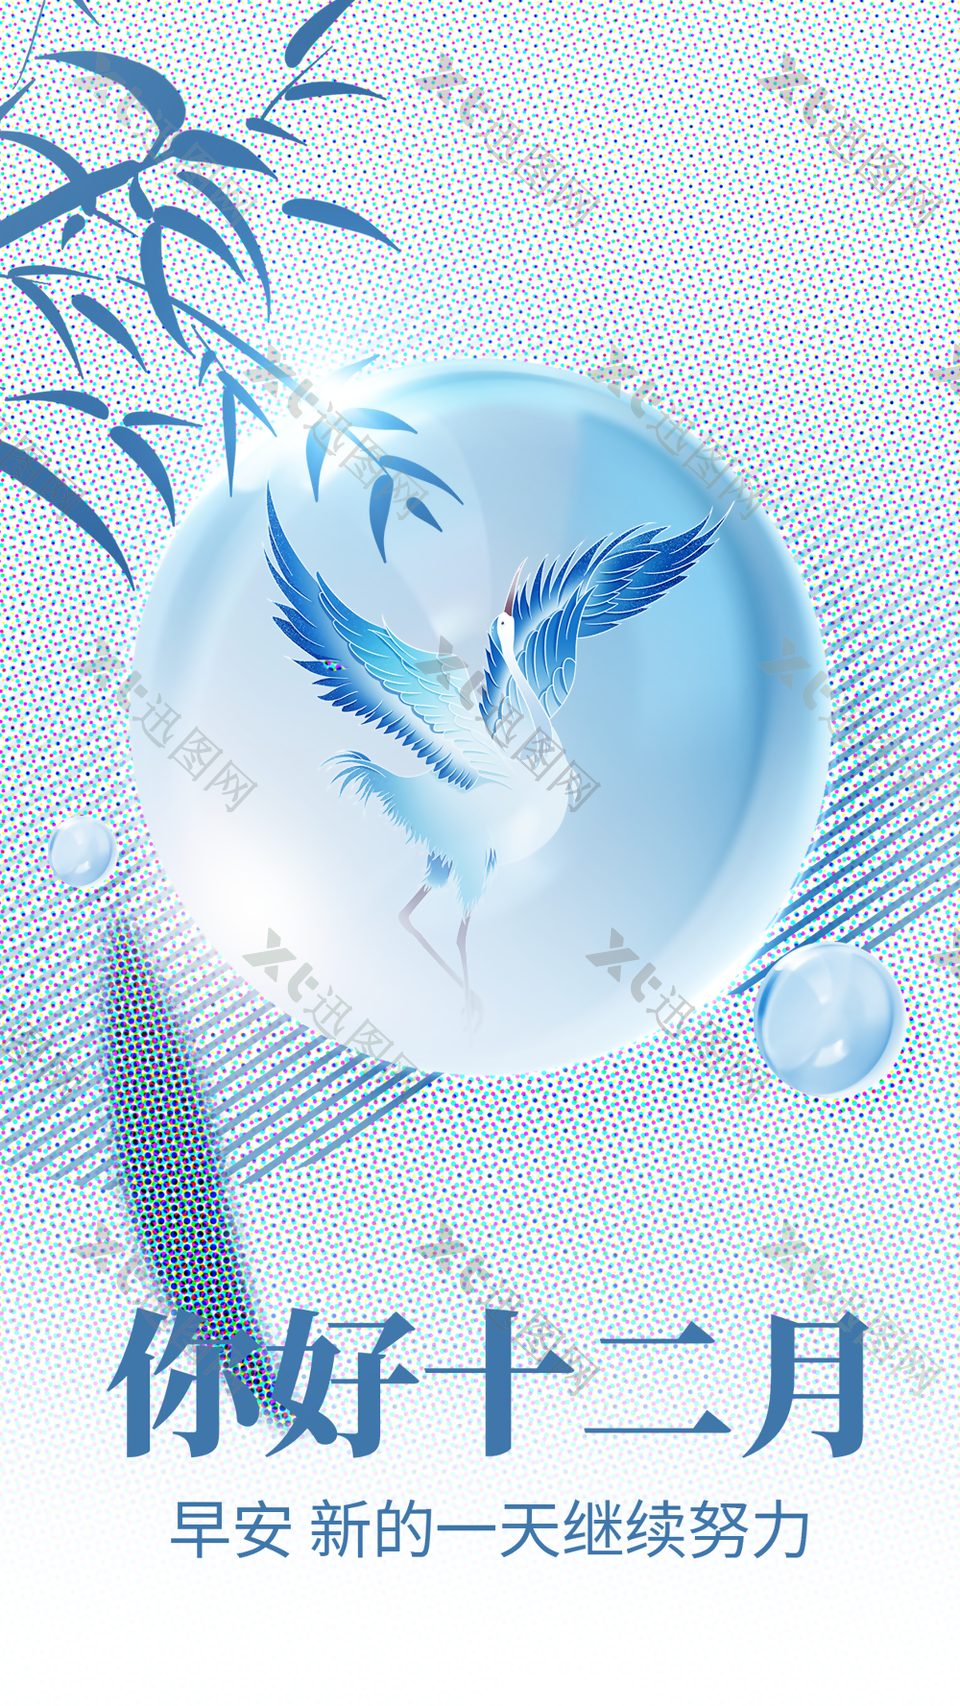 蓝色简约中国风你好十二月早安物语海报设计